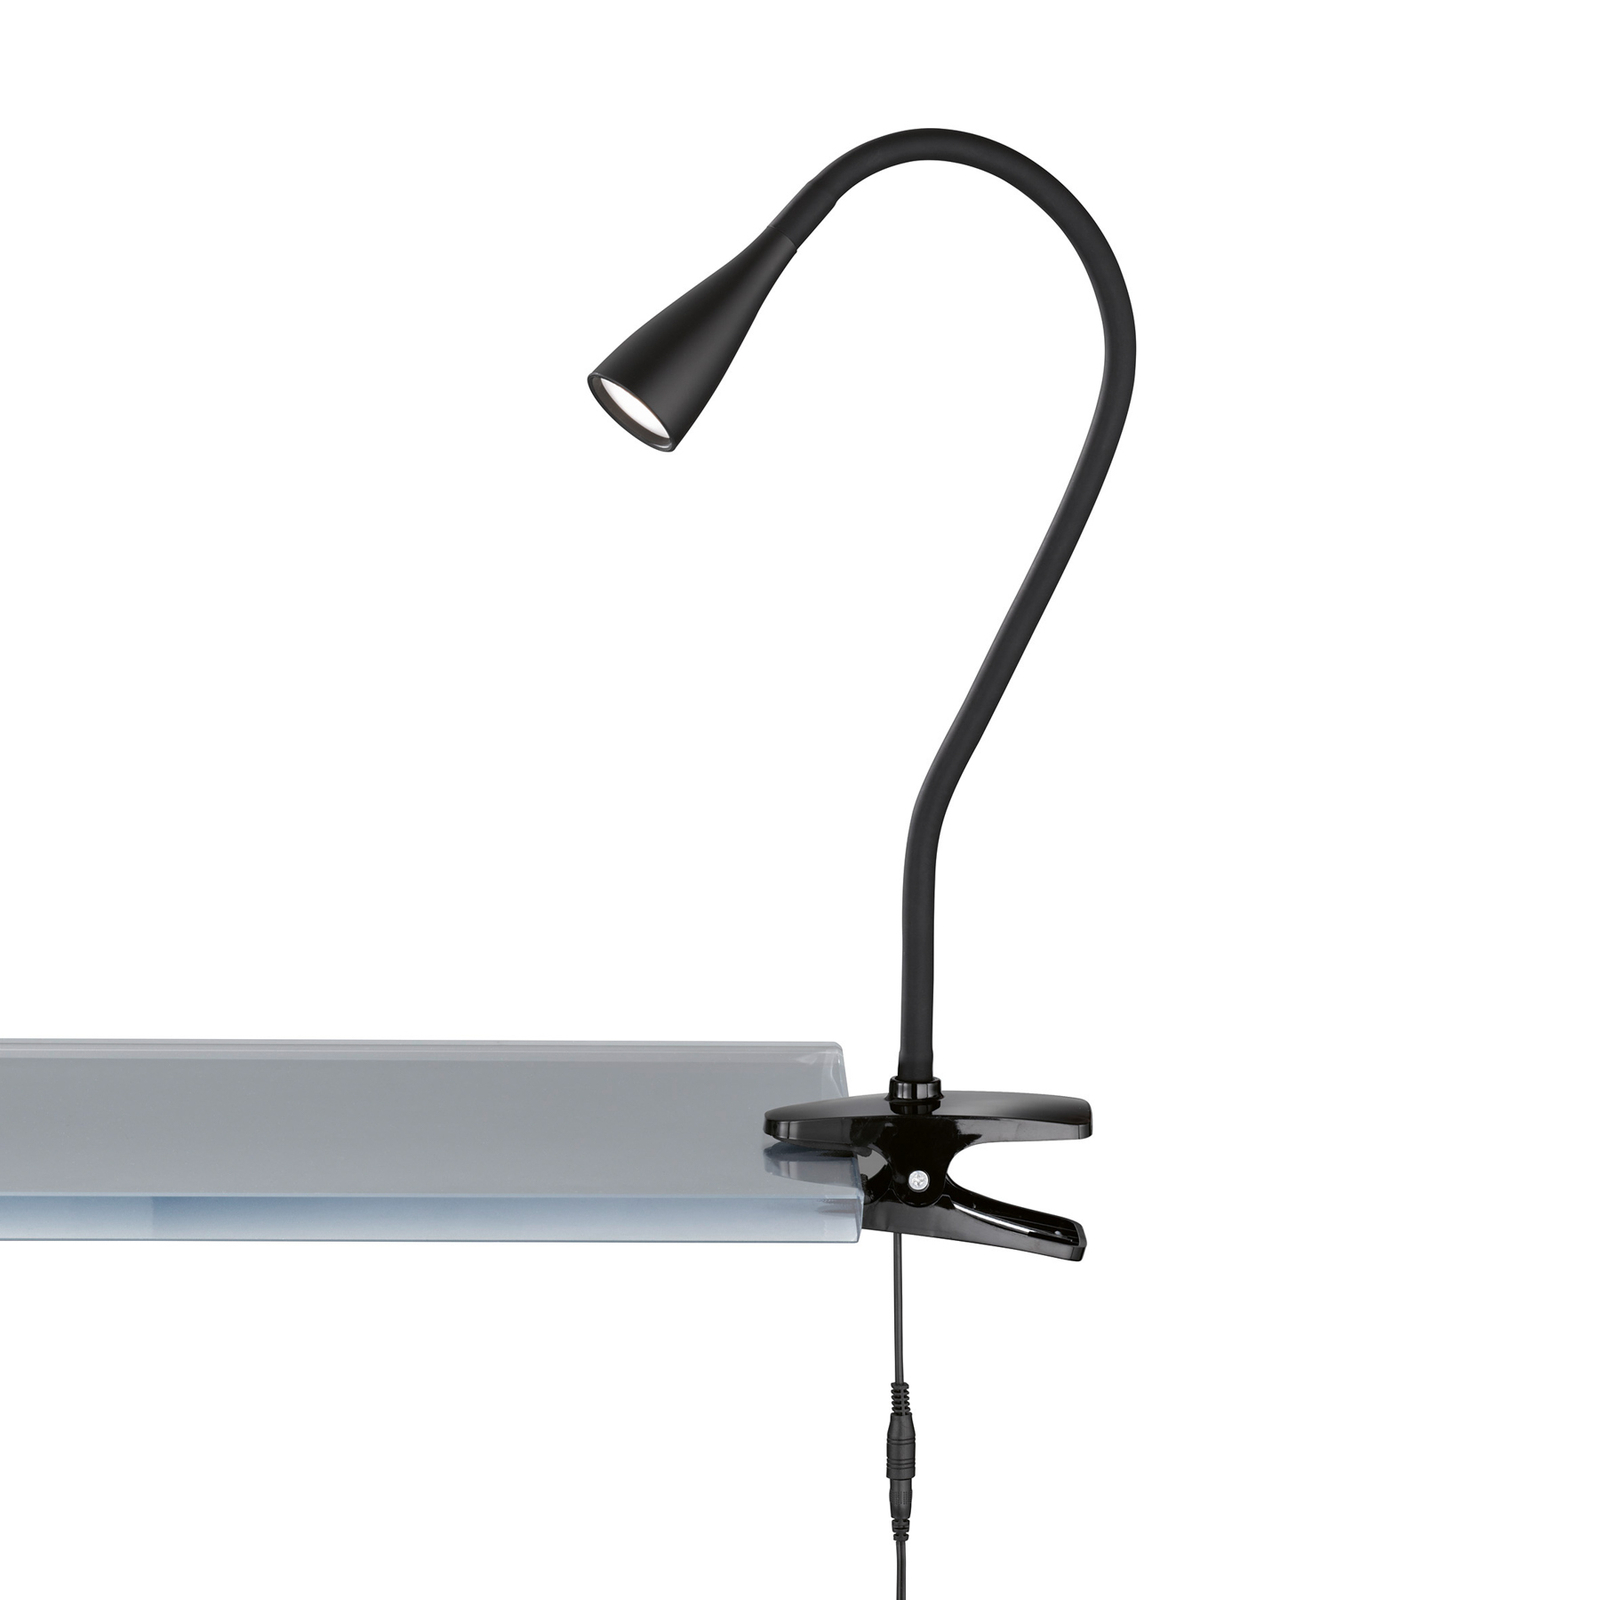 Braçadeira de luz LED Nox, preta com braço flexível